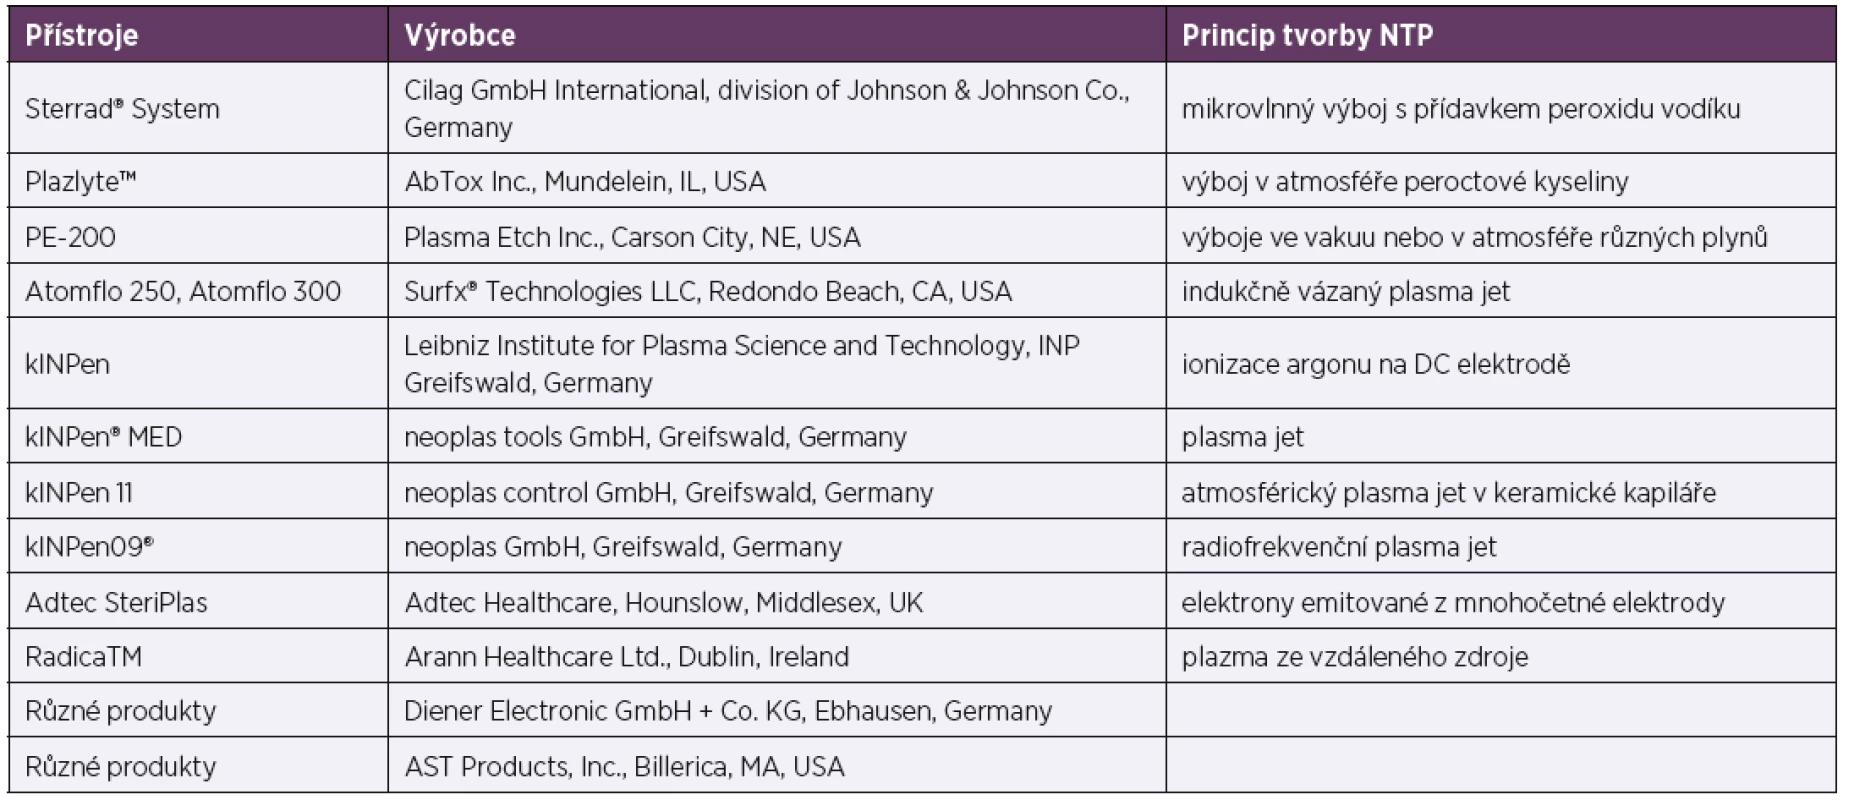 Příklady komerčních zdrojů NTP<br>
Table 2. Examples of commercial sources of non-thermal plasmas